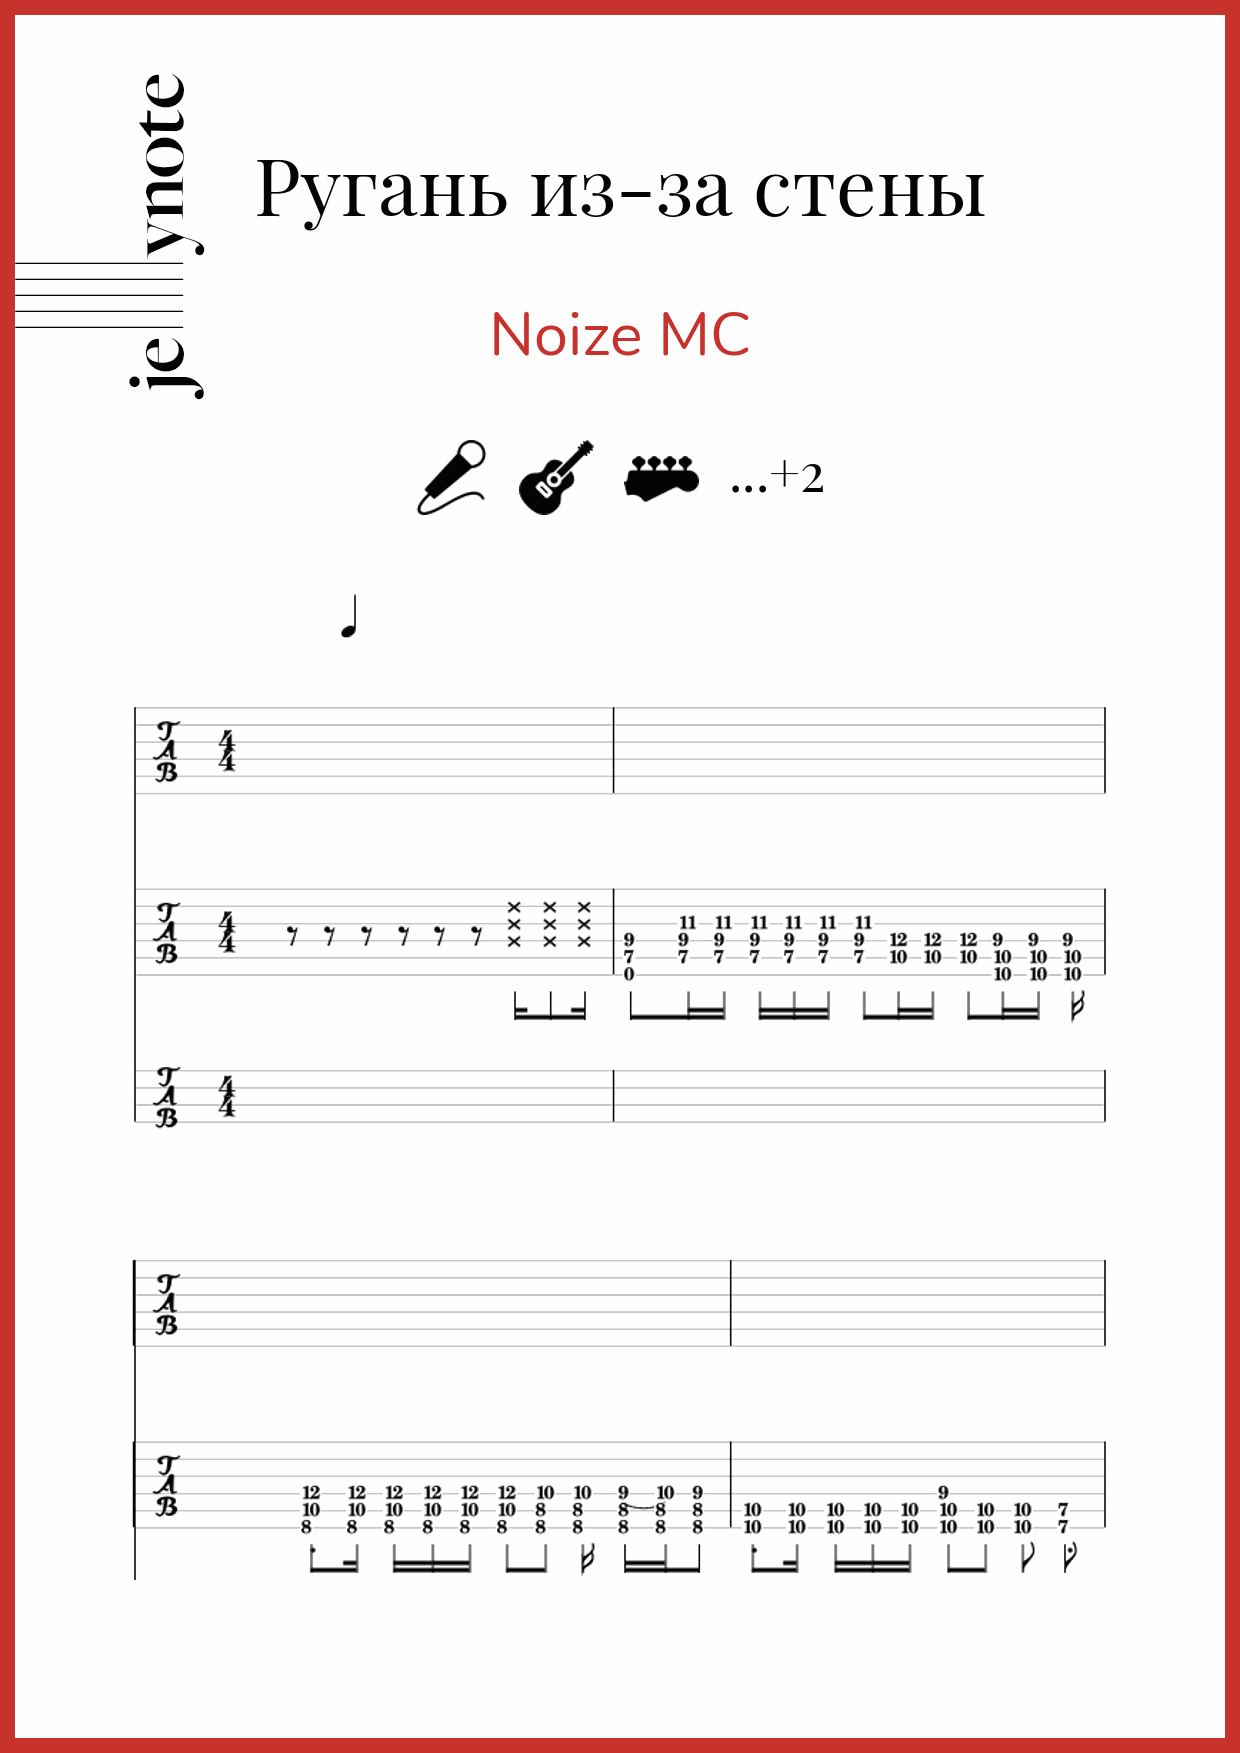 Песня стена аккорды. Noize MC Ноты. Noize MC ругань из-за стены Ноты для фортепиано. Нойз аккорды. Нойз МС ругань из за стены Ноты.